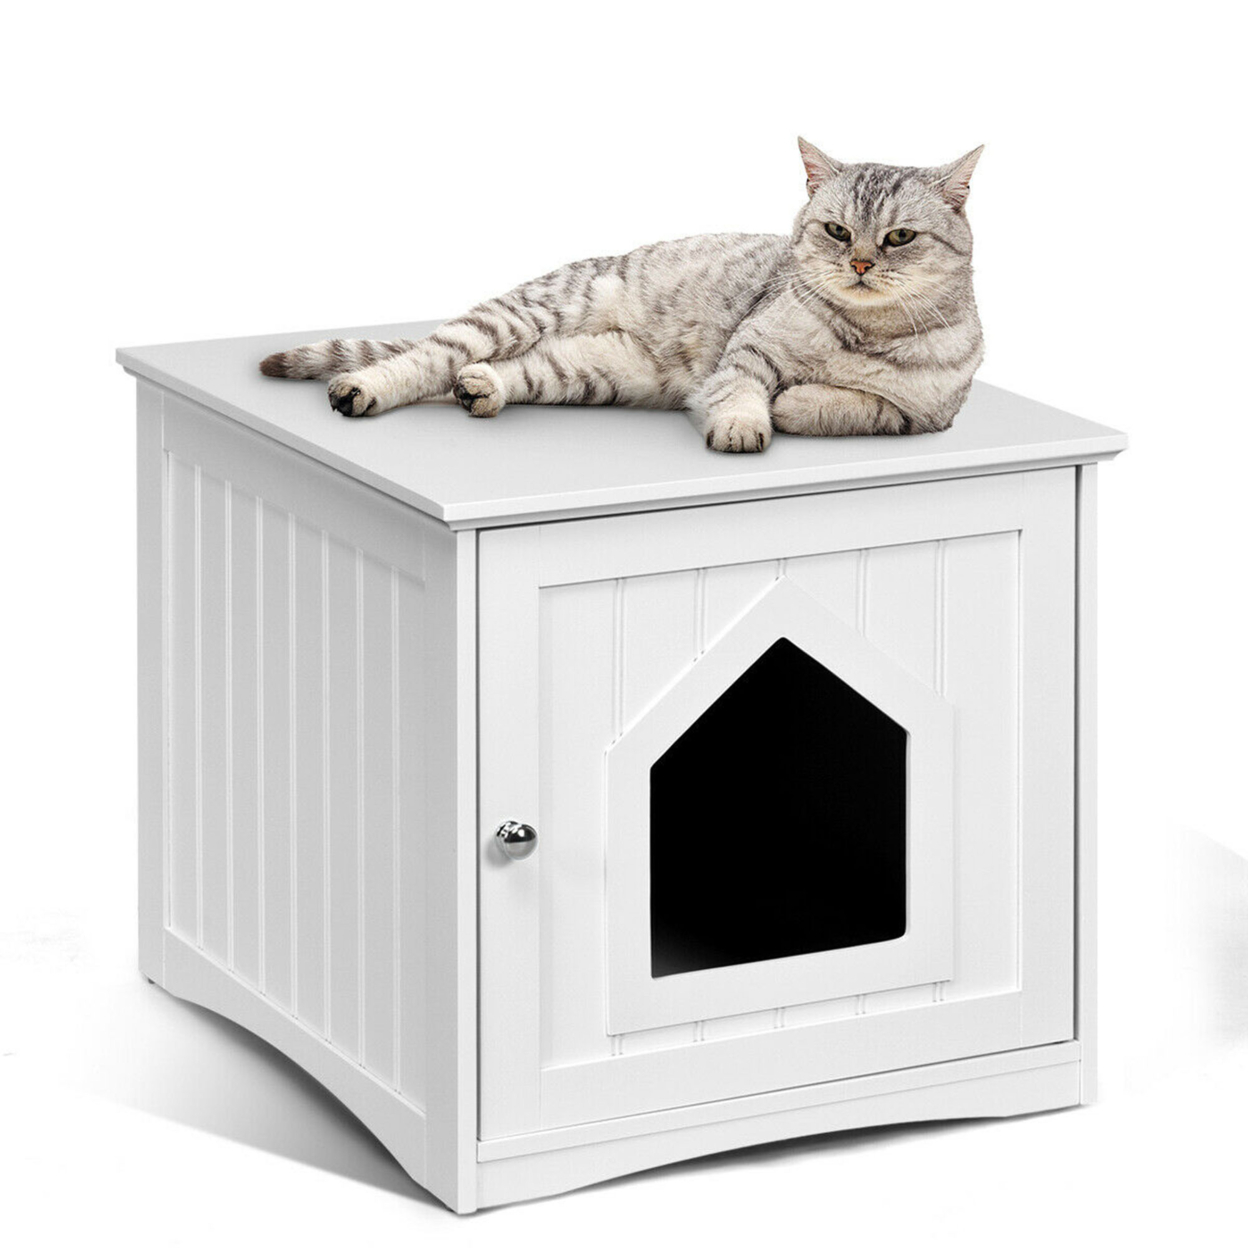 Weatherproof Multi-function Pet Cat House Outdoor Indoor Sidetable Nightstand